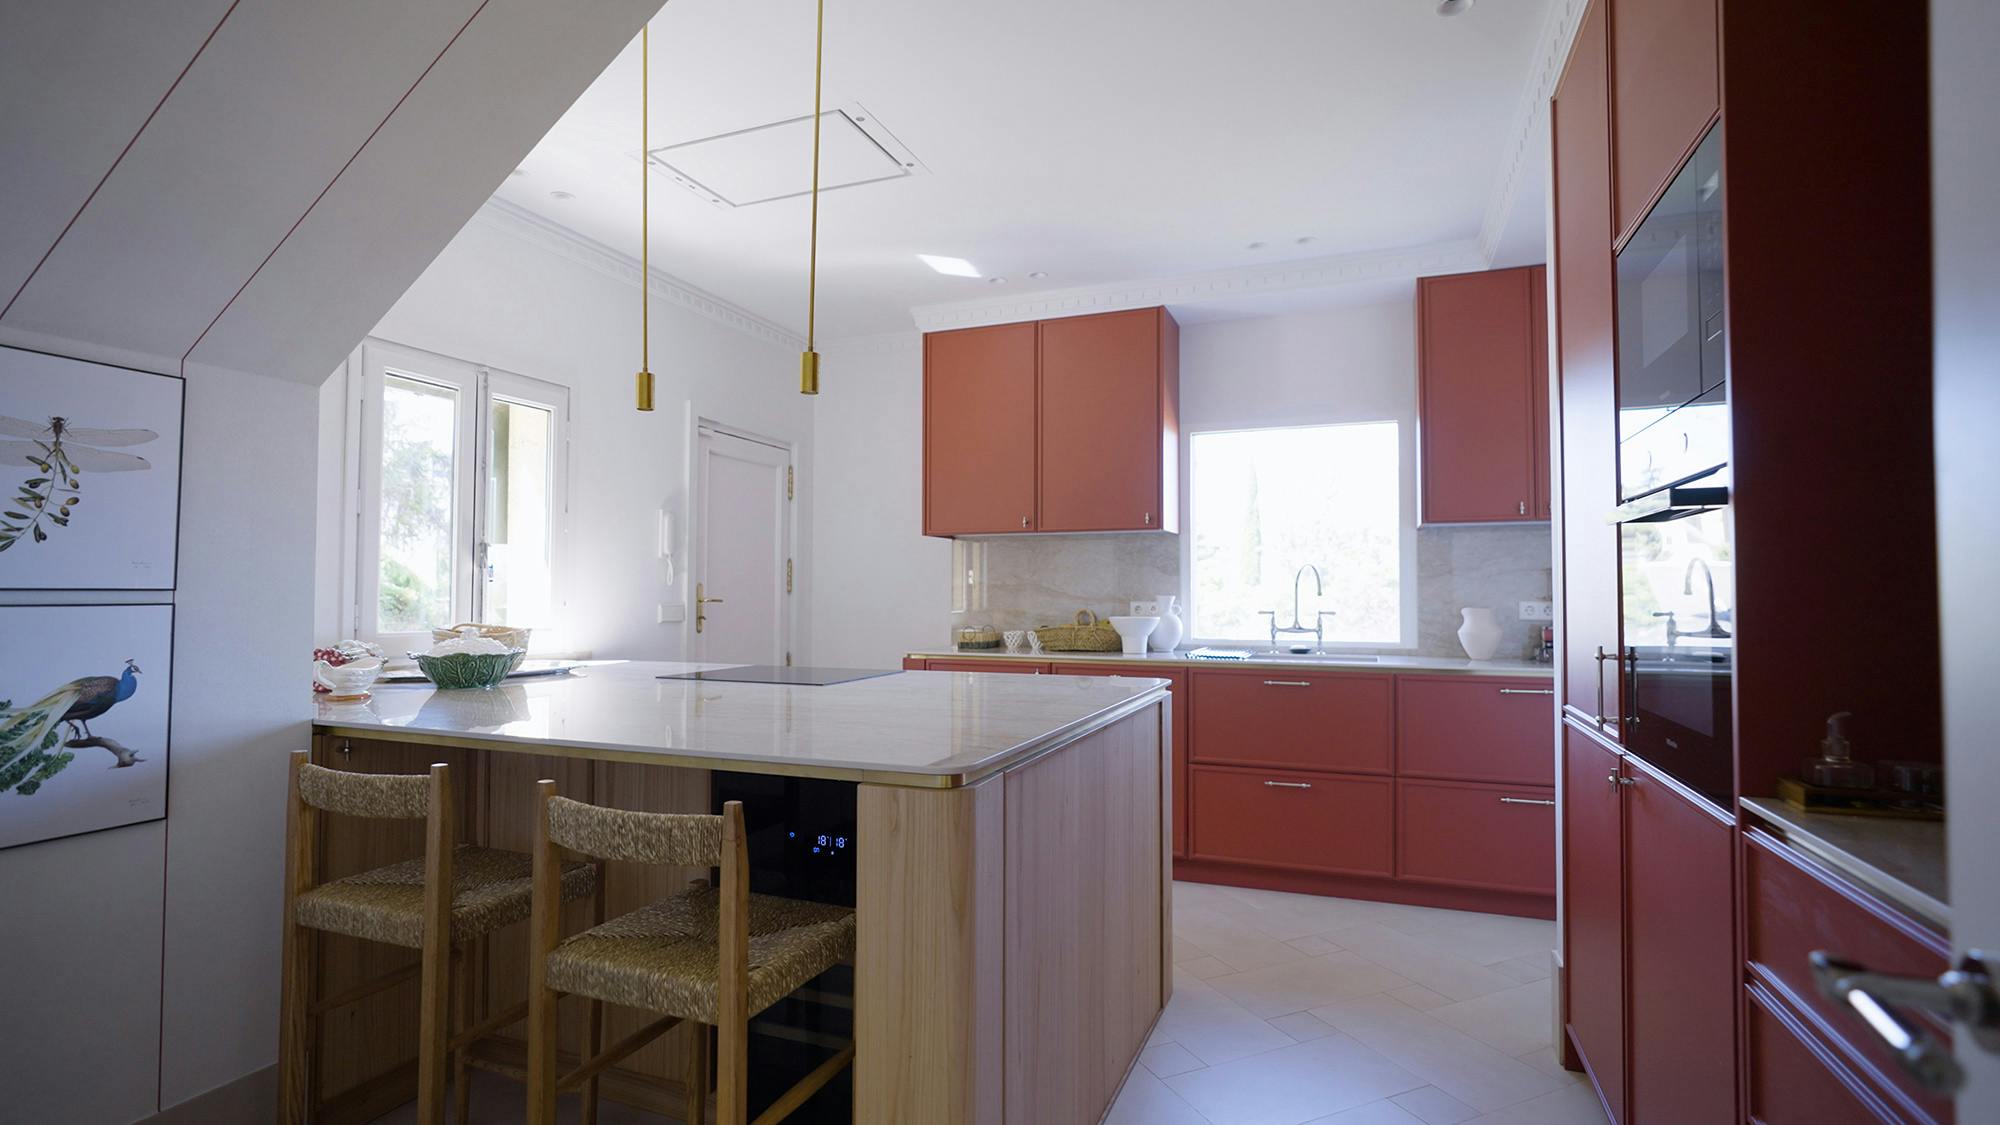 Numéro d'image 32 de la section actuelle de Architect Pils Ferrer chooses DKTN for the renovation of her home, where the kitchen speaks for itself de Cosentino France